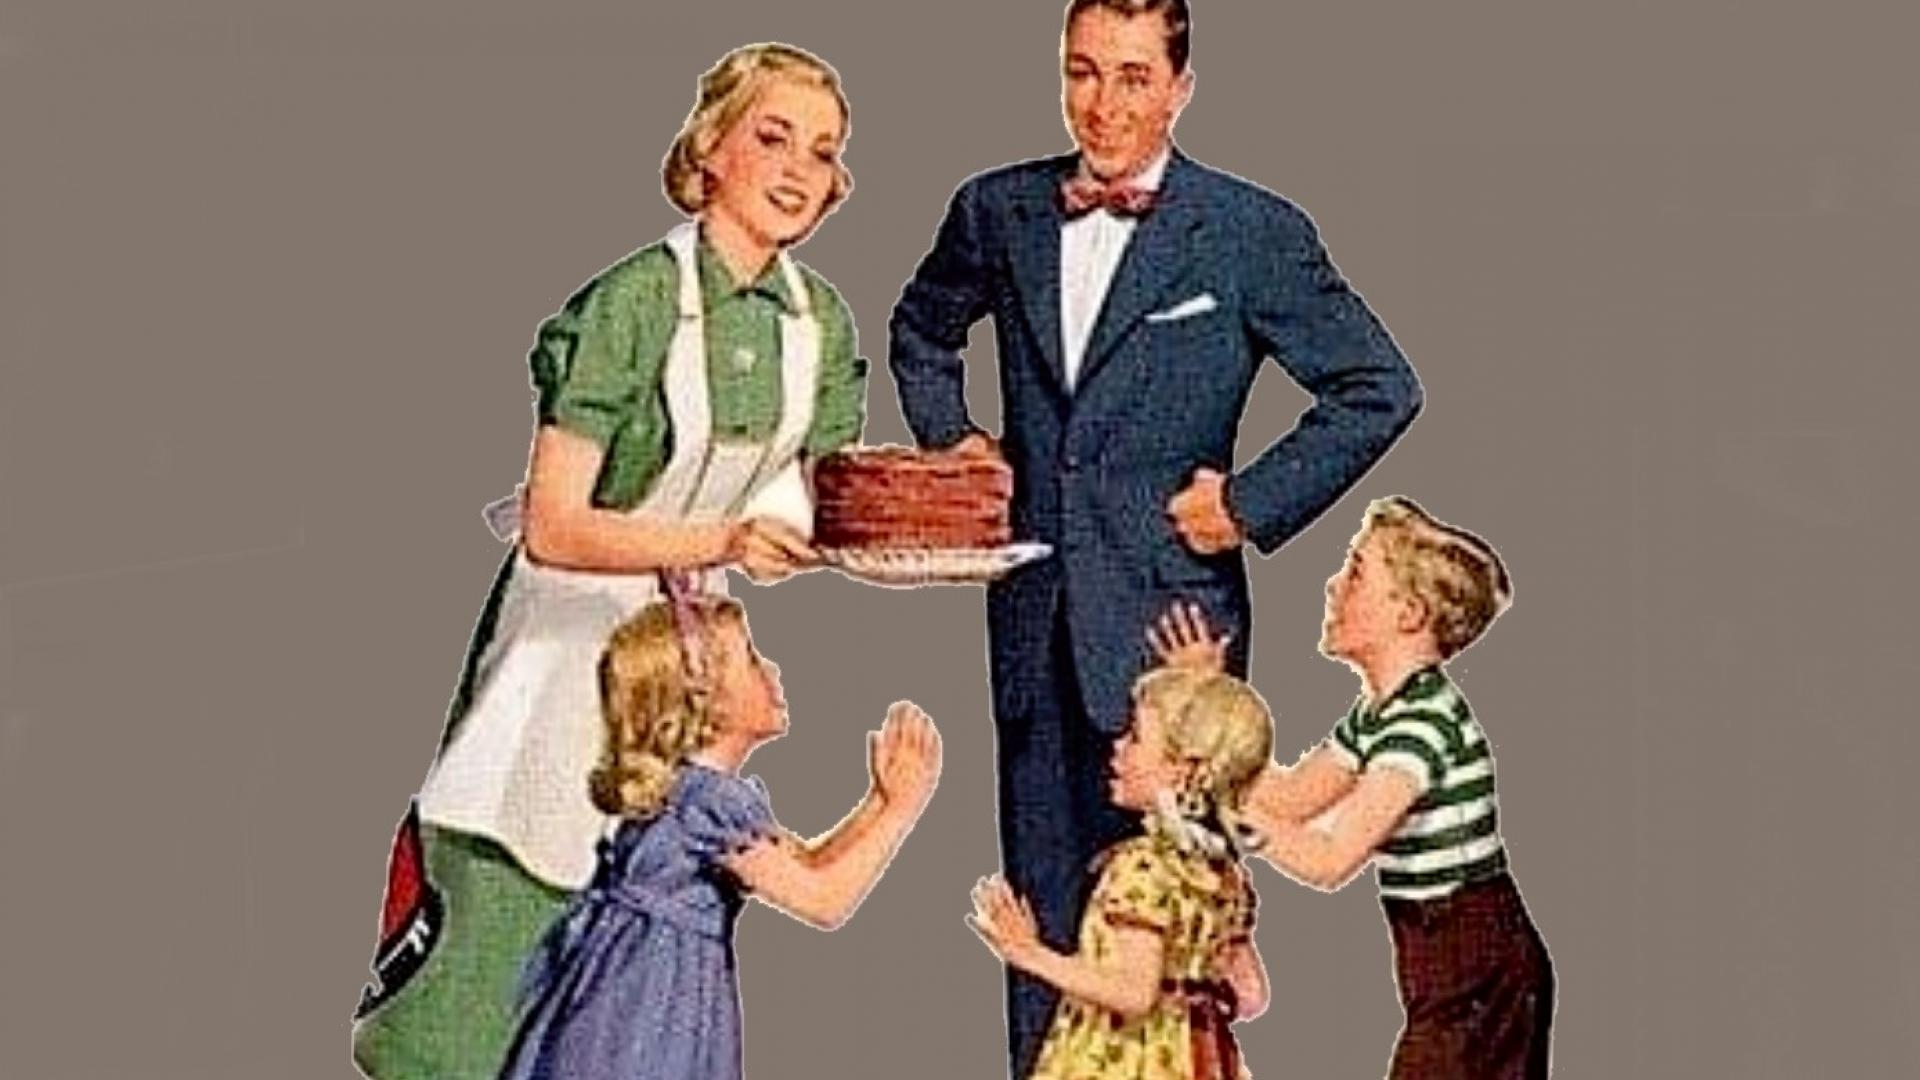 Plaatje van jaren-50 gezin met man, vrouw die uit de keuken komt met bakresultaat, blije kinderen